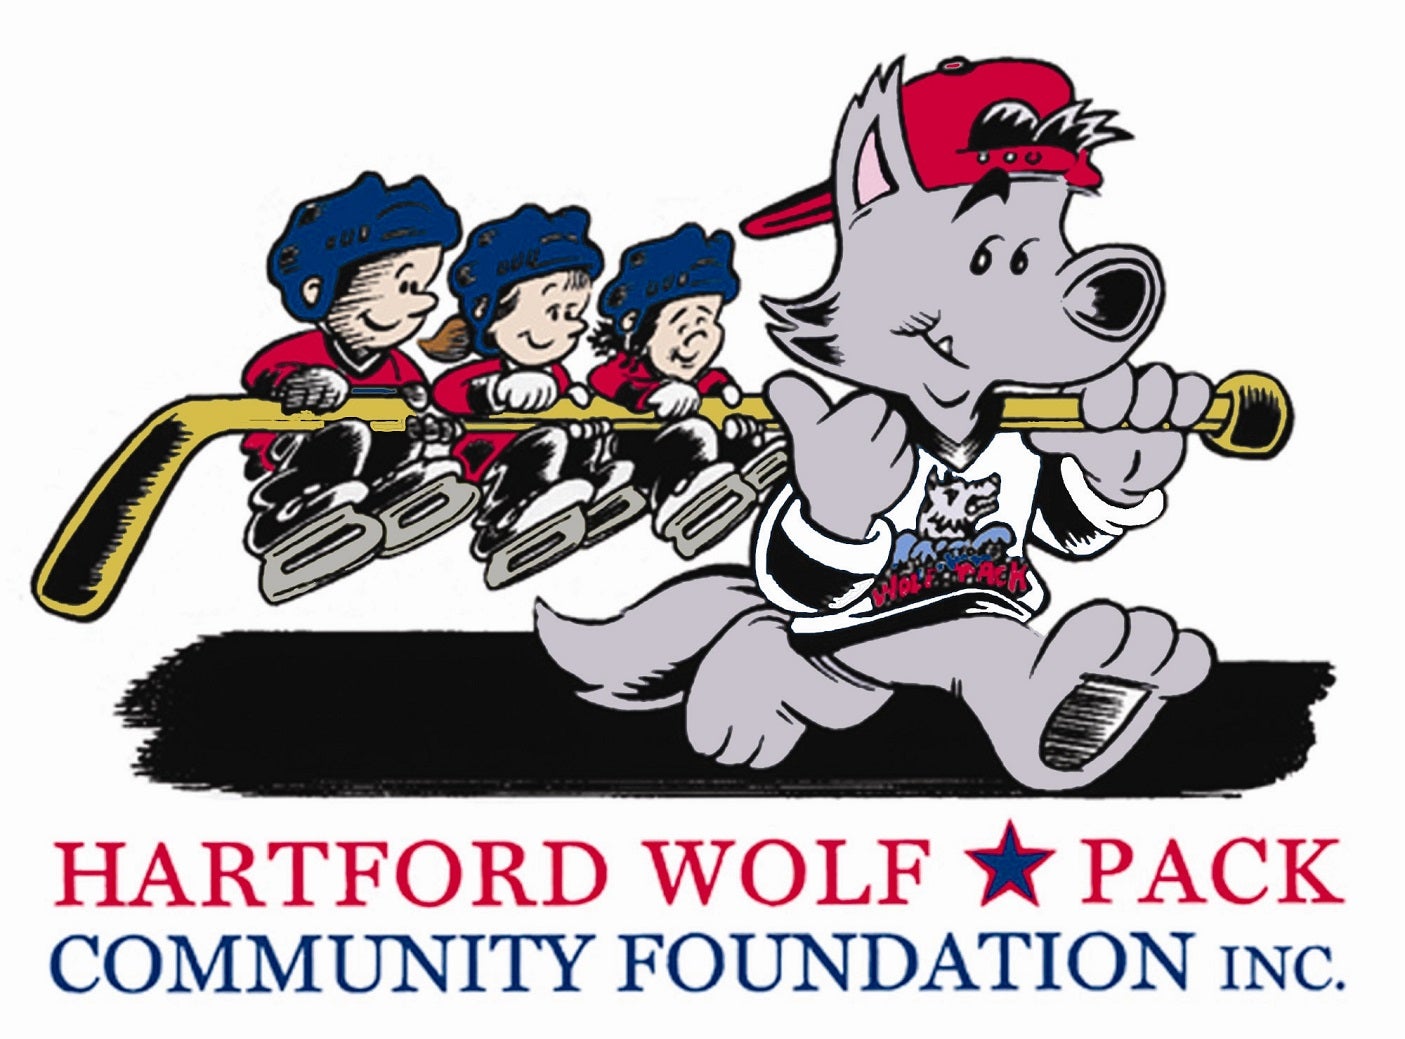 Community Foundation Logo - resized.jpg